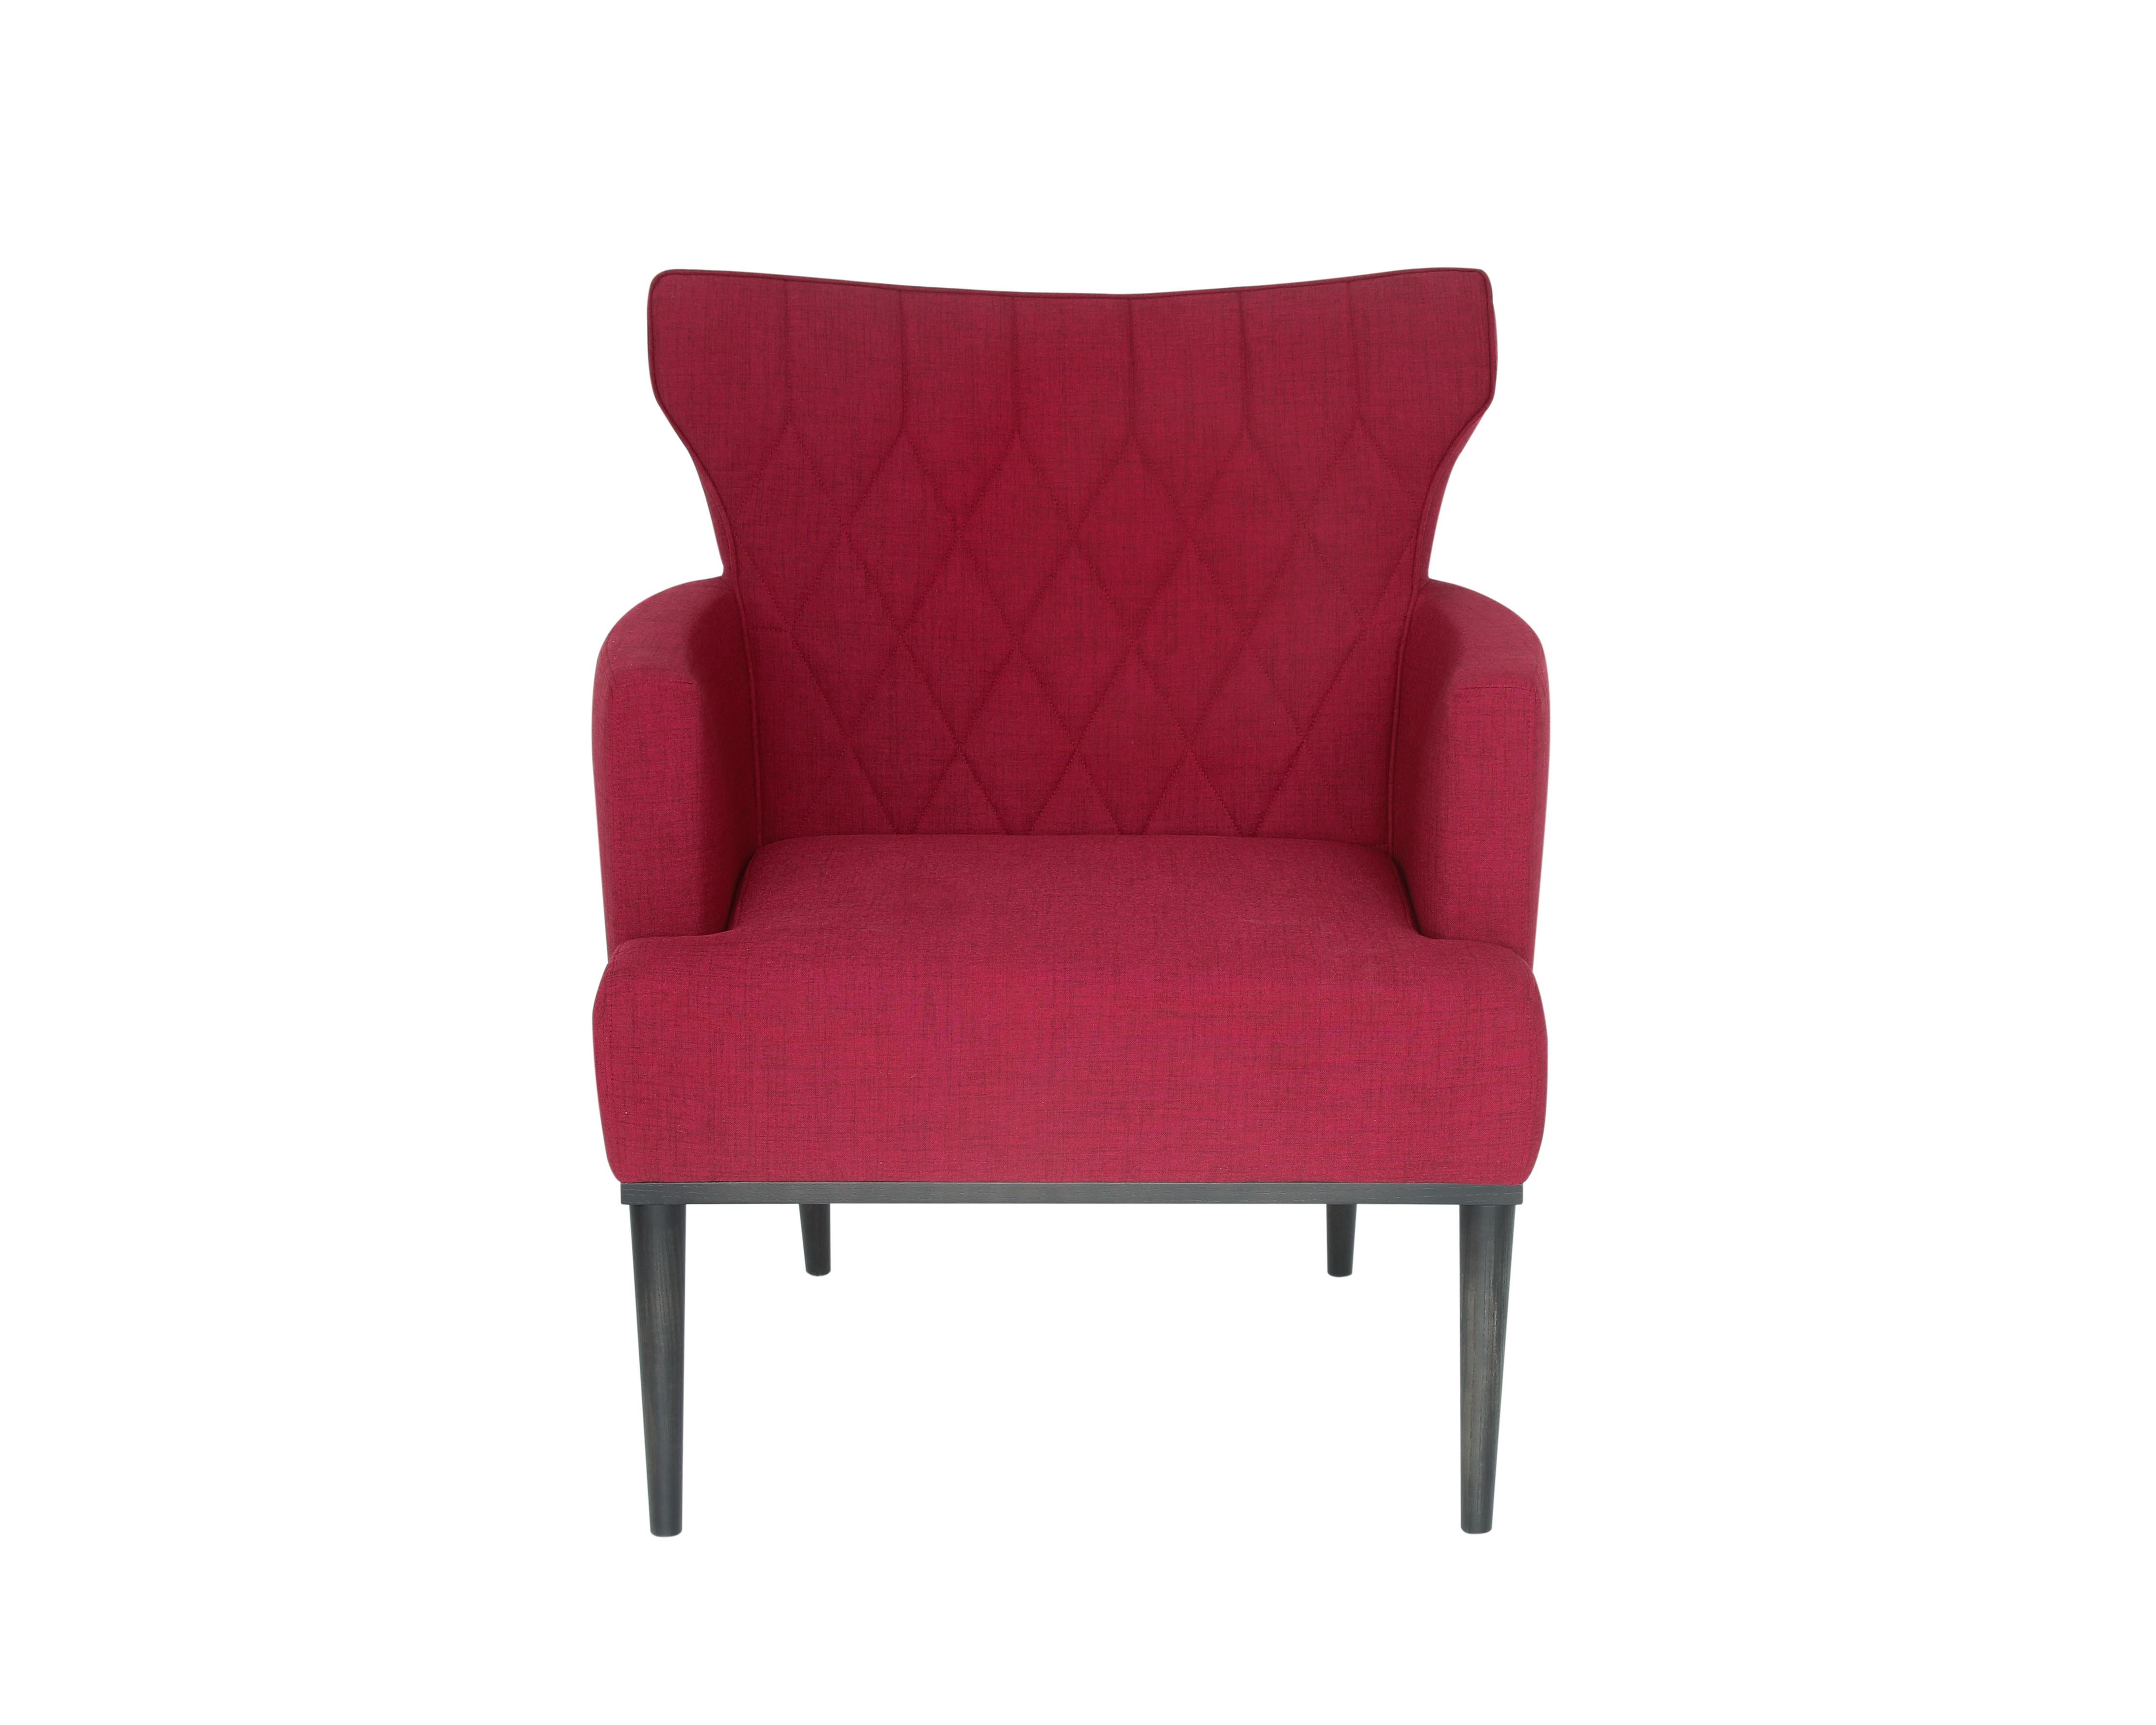 Der Majestic Sessel ist eine perfekte Verbindung von Schlichtheit und Raffinesse. Dieses exquisite Möbelstück zeichnet sich durch die sorgfältig handgefertigten Nähte entlang der Rückenlehne aus, die ein einzigartiges und luxuriöses Design schaffen.